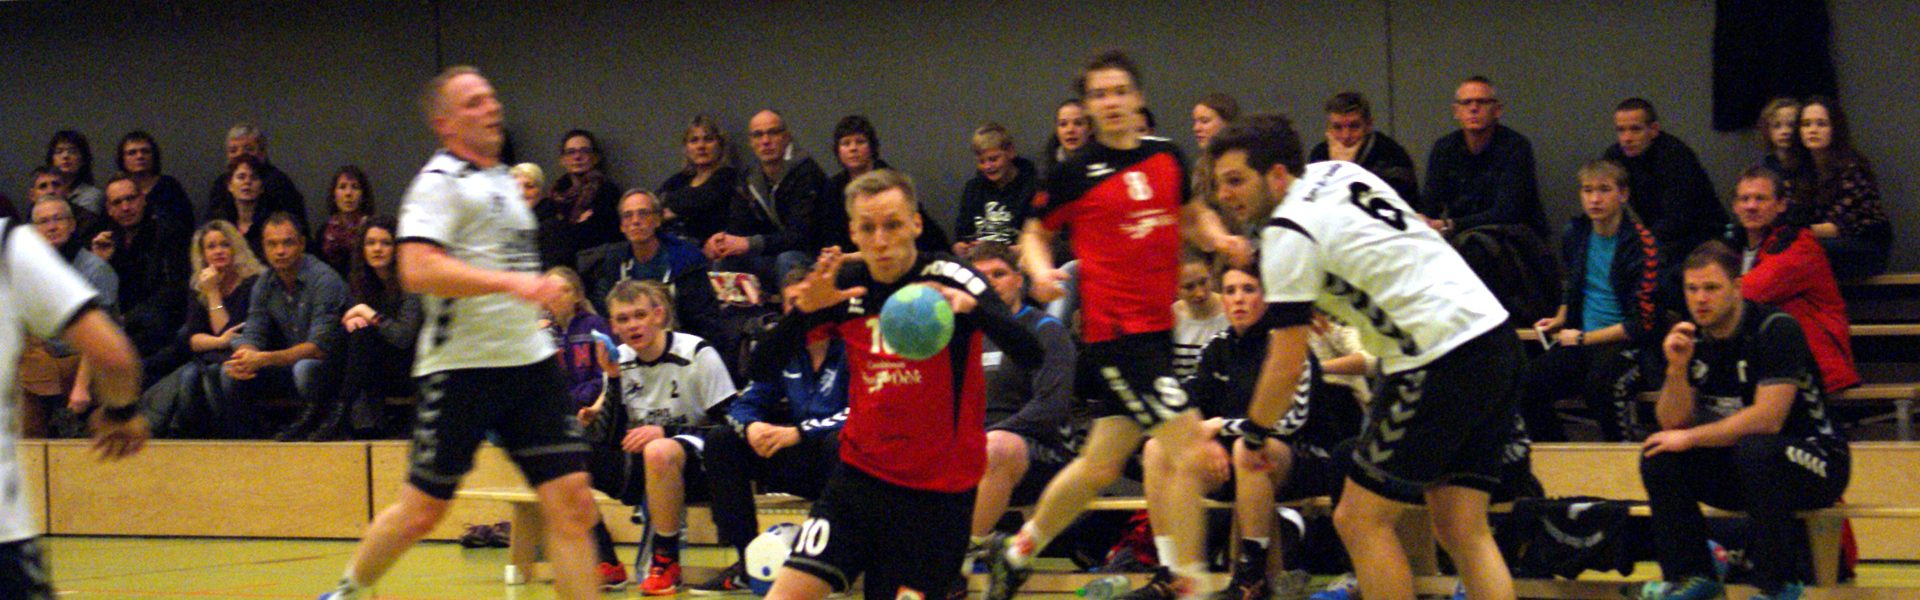 Ts Woltmershausen Handball